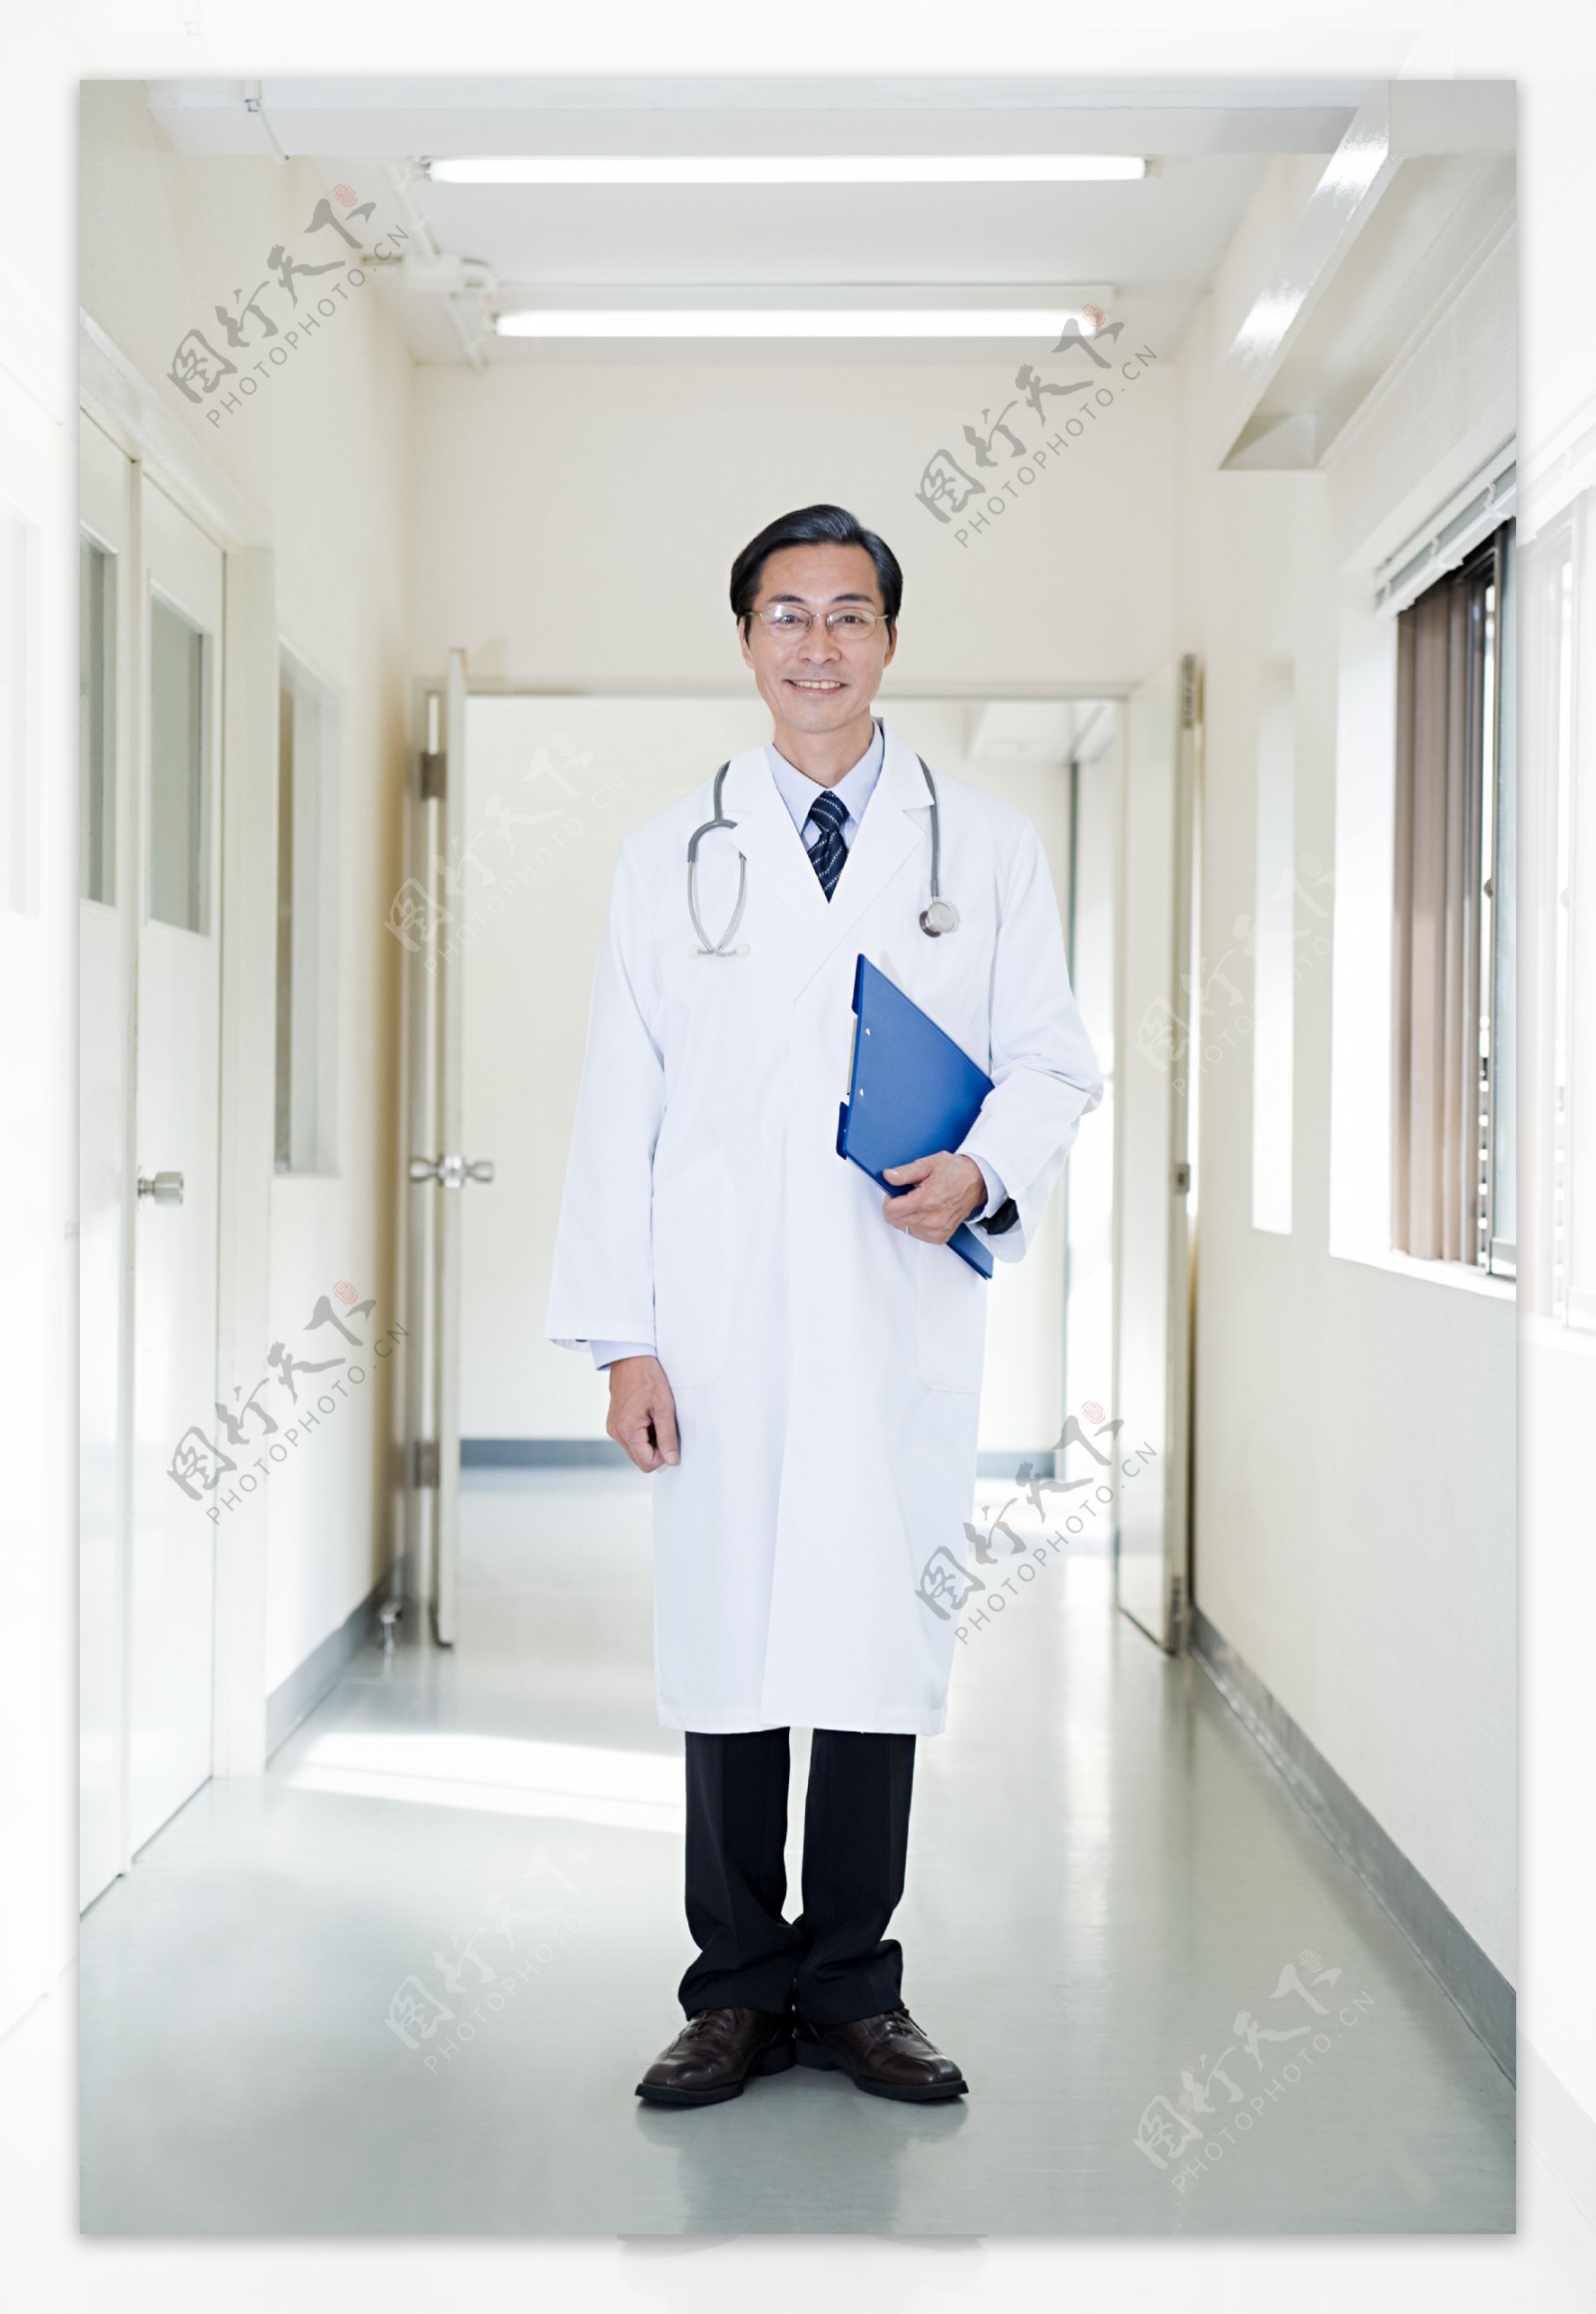 亲切微笑的中年男性医生图片